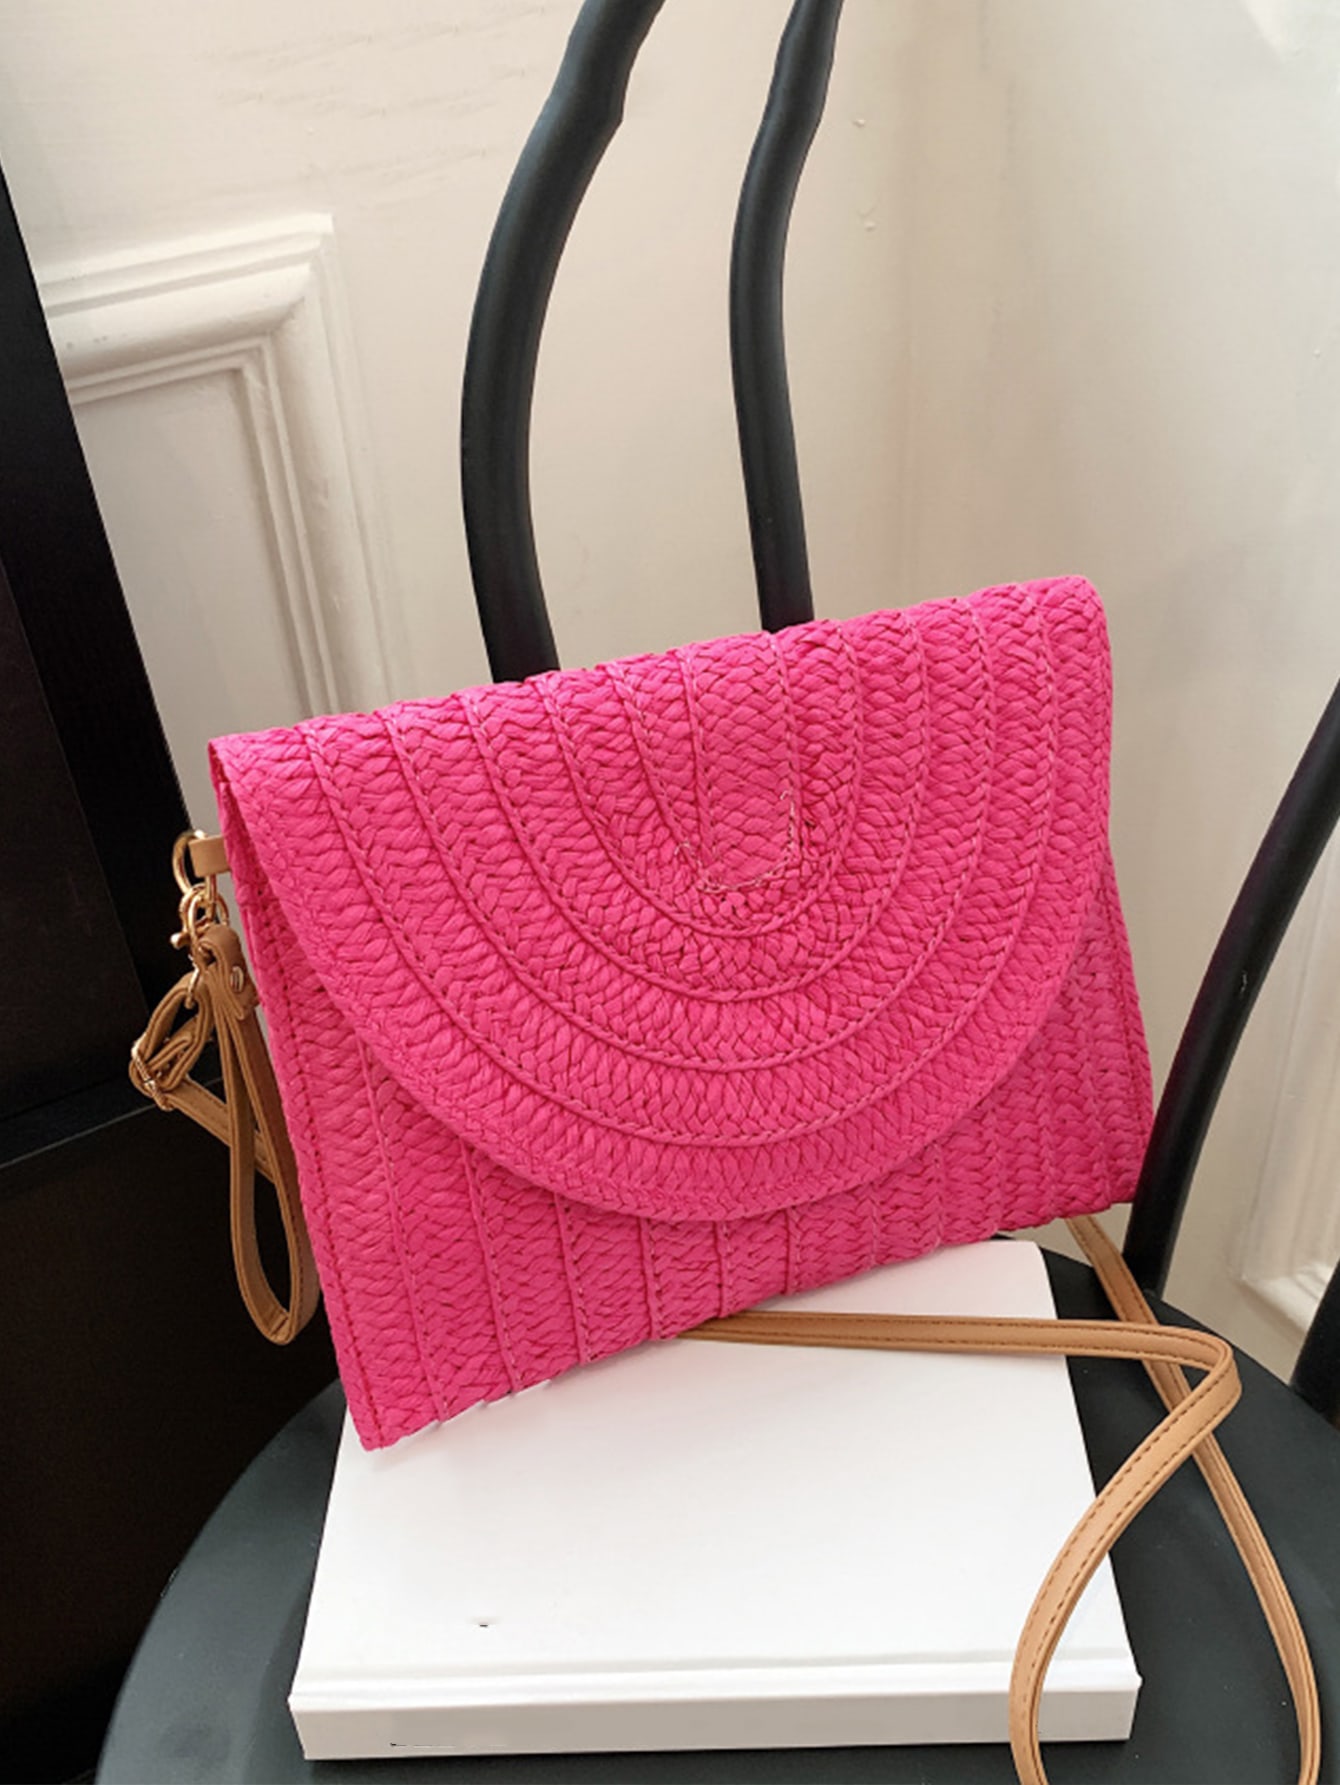 Минималистичная соломенная сумка с клапаном для женщин, ярко-розовый маленькая поясная сумка неоново розовая вечерняя сумка в стиле фанк с рюшами для женщин абрикос